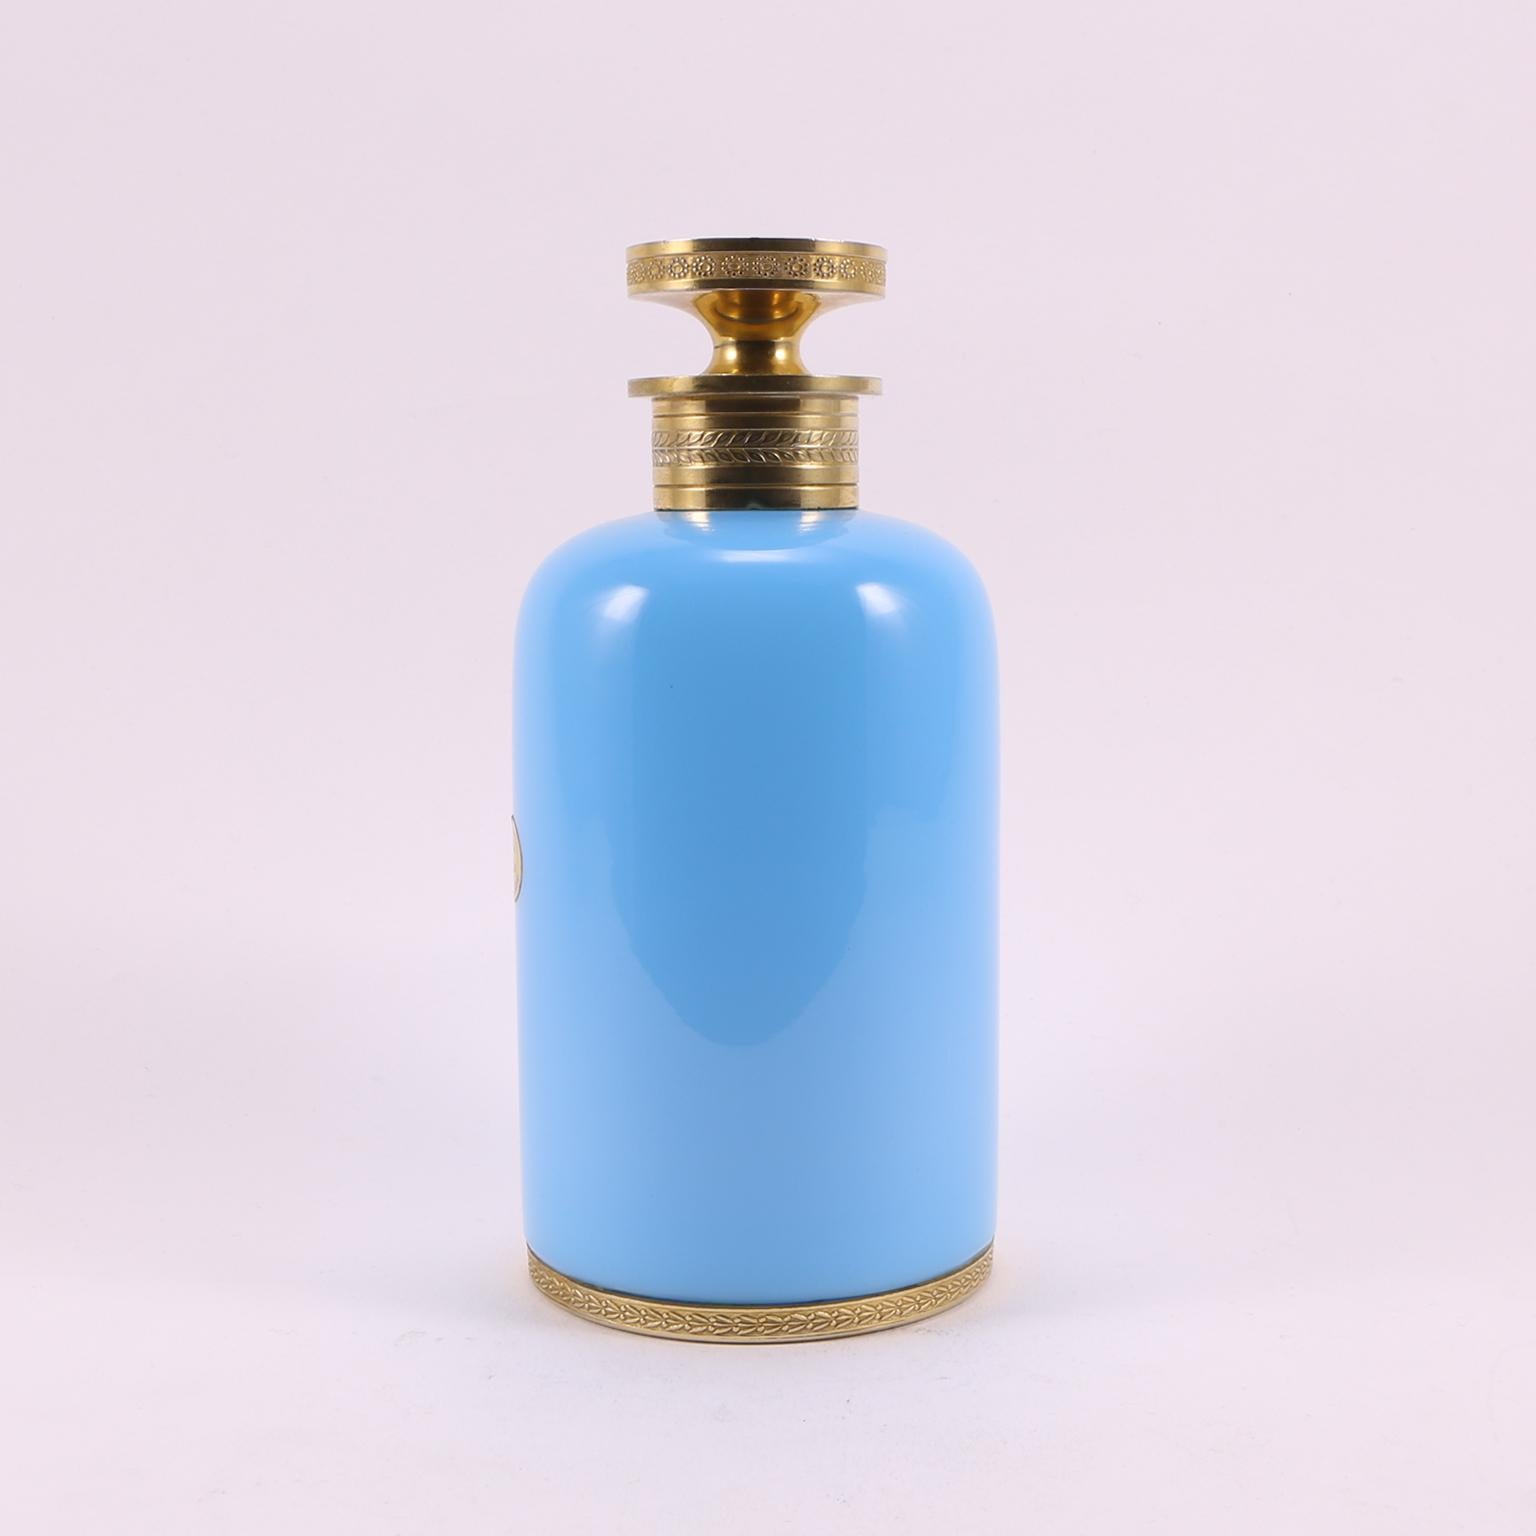 Voici un beau et ancien flacon de parfum en verre opalin de Sèvres de 1920, soufflé à la main en France, dans un charmant ton turquoise clair et des détails en métal doré.
Il a été réalisé par le célèbre designer et producteur L. Seiler.
Avec le